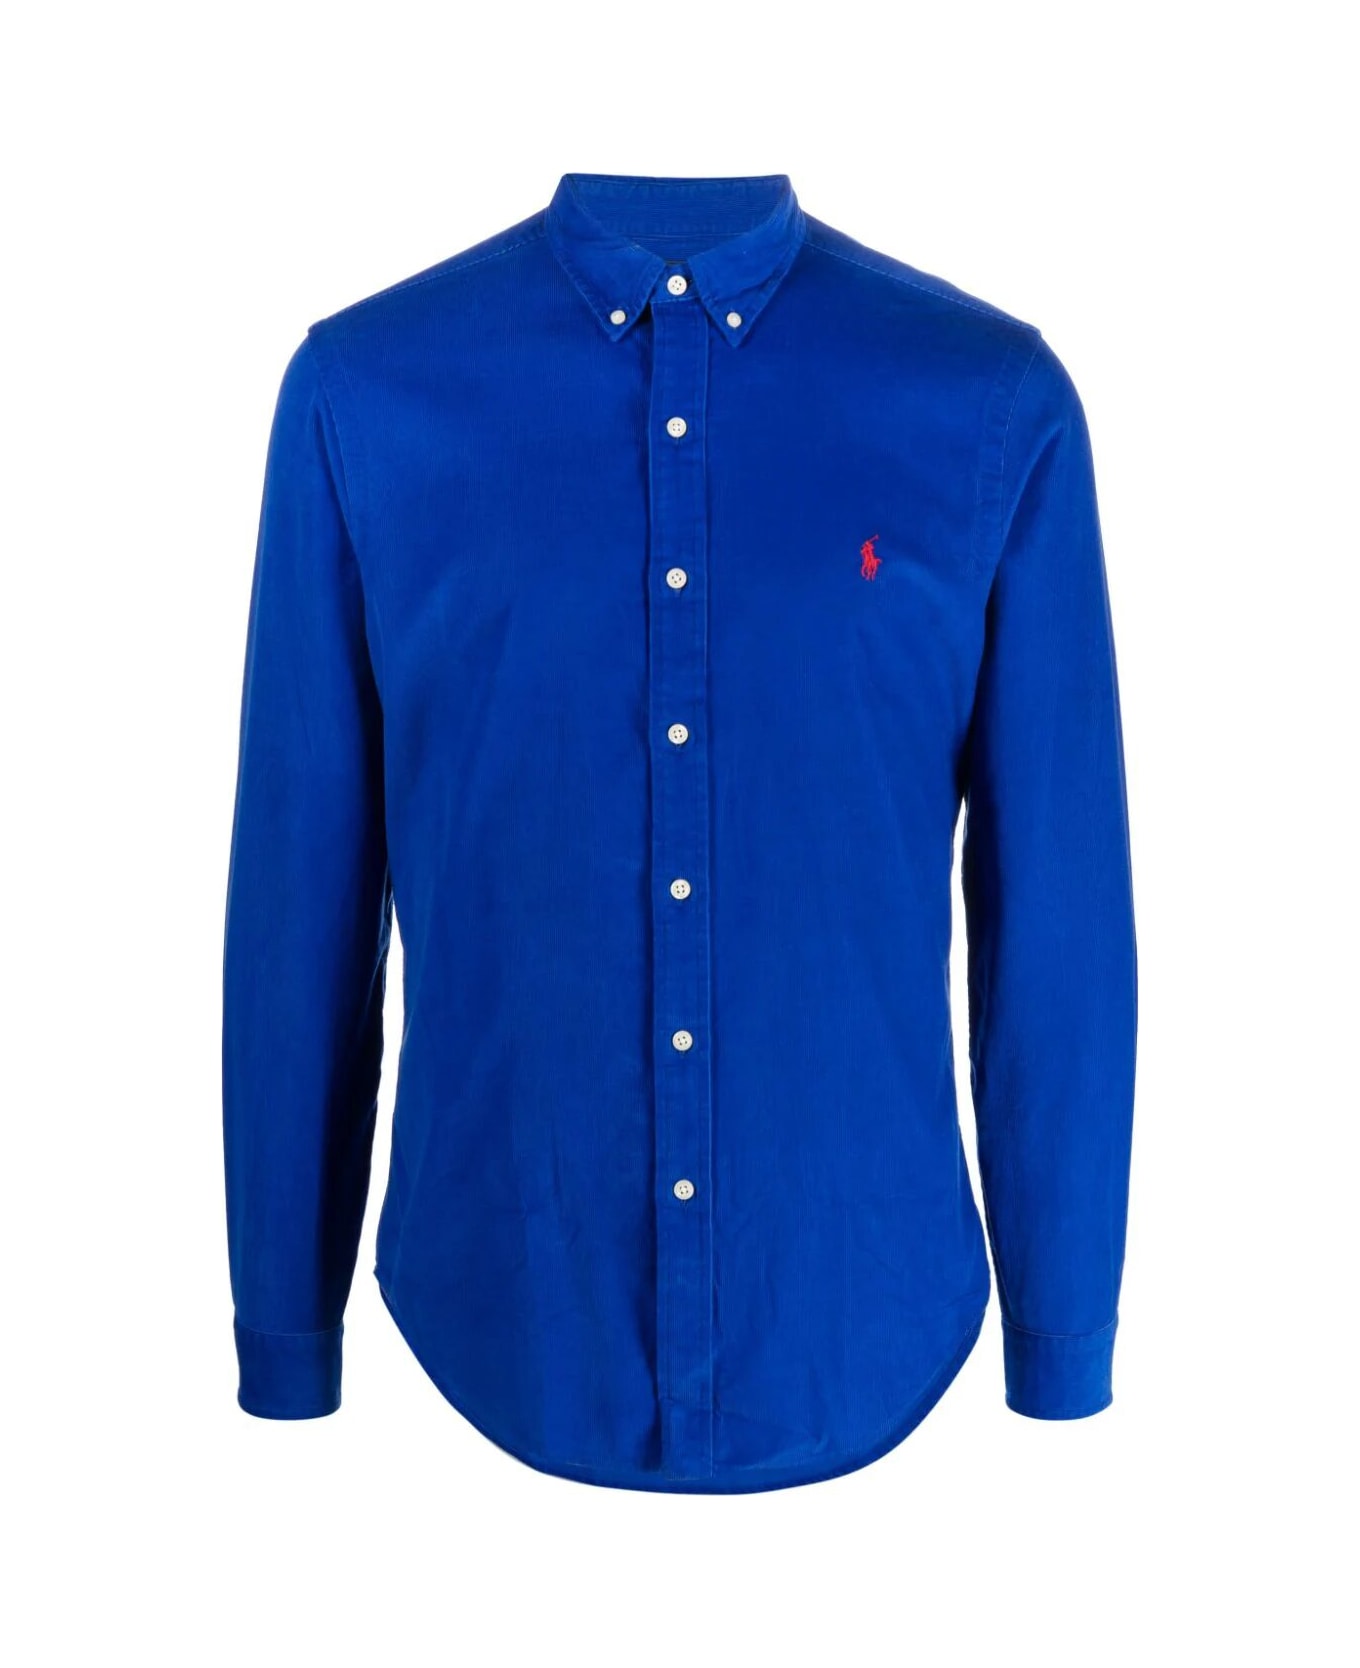 Polo Ralph Lauren Corduroy Long Sleeve Sport Shirt - New Sapphire